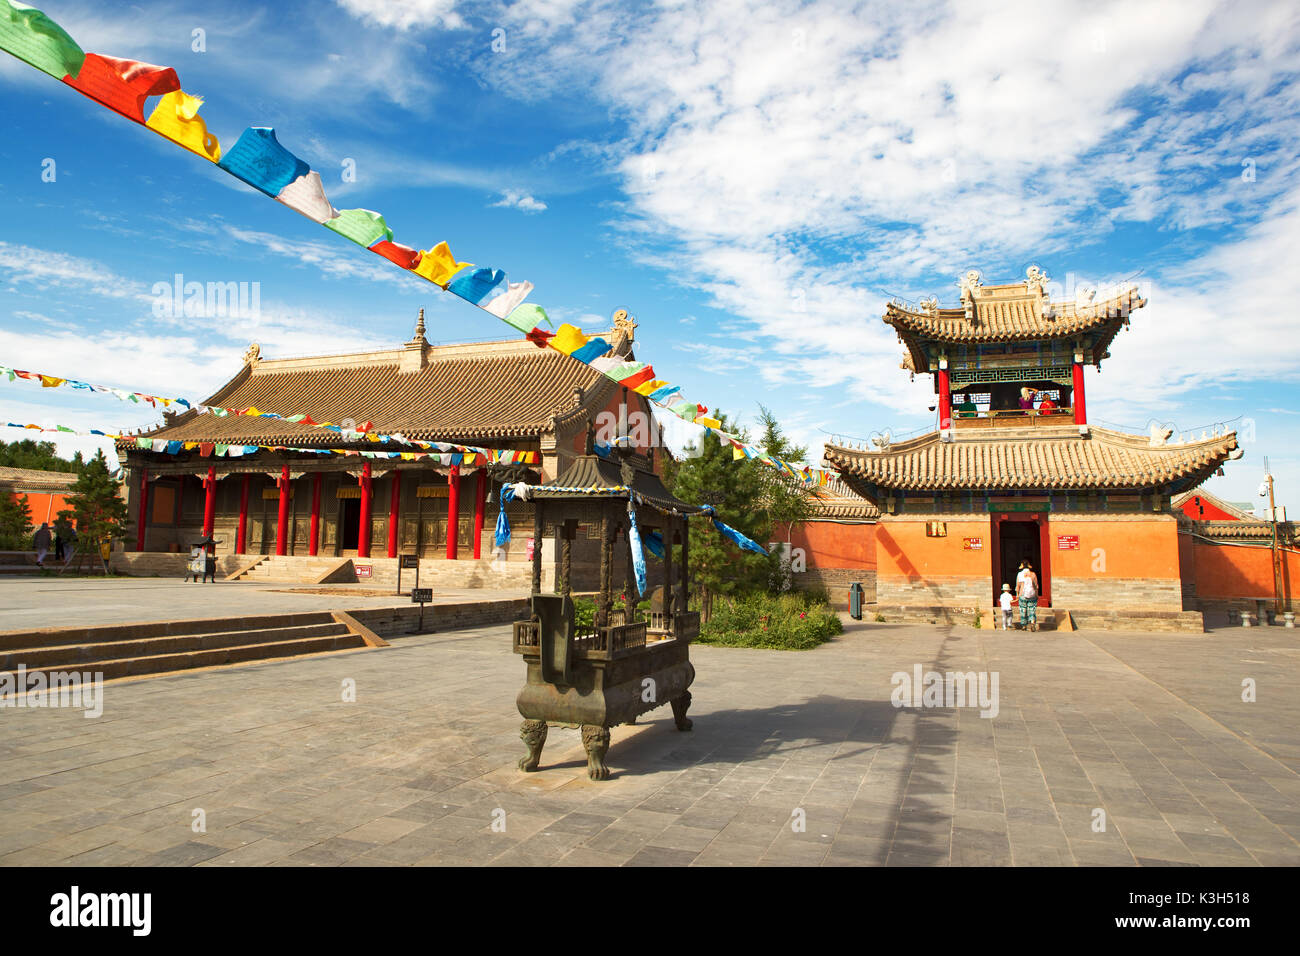 Xilinhot, Mongolie intérieure, Chine - 23 juillet, 2017 : beizi temple est l'une des plus grandes lamaseries en Mongolie intérieure. Banque D'Images